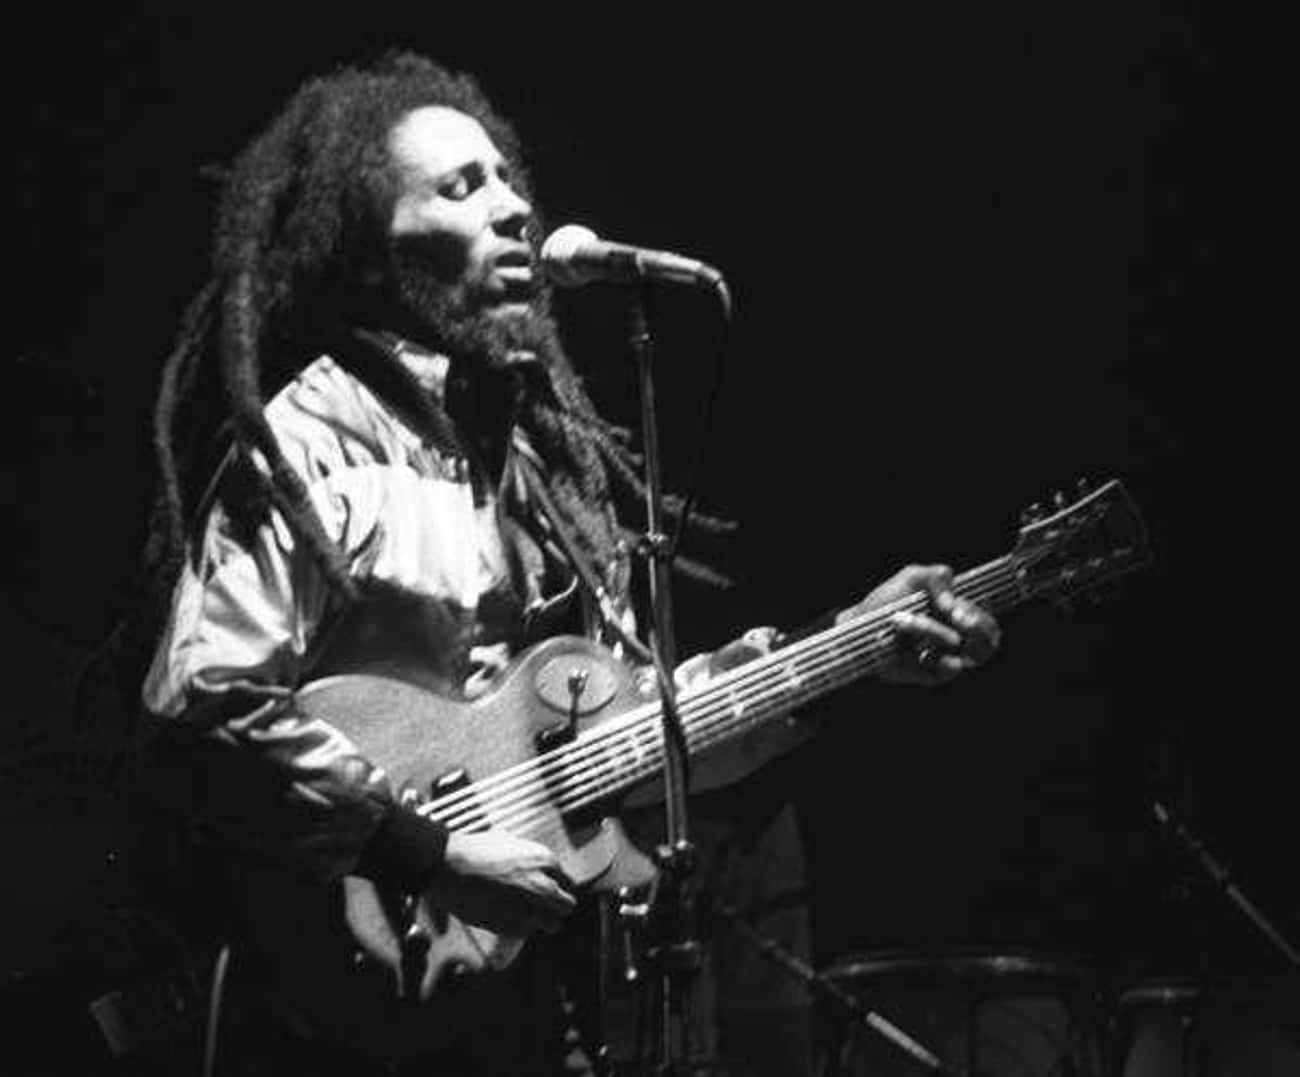 ‘Buffalo Soldier’ By Bob Marley